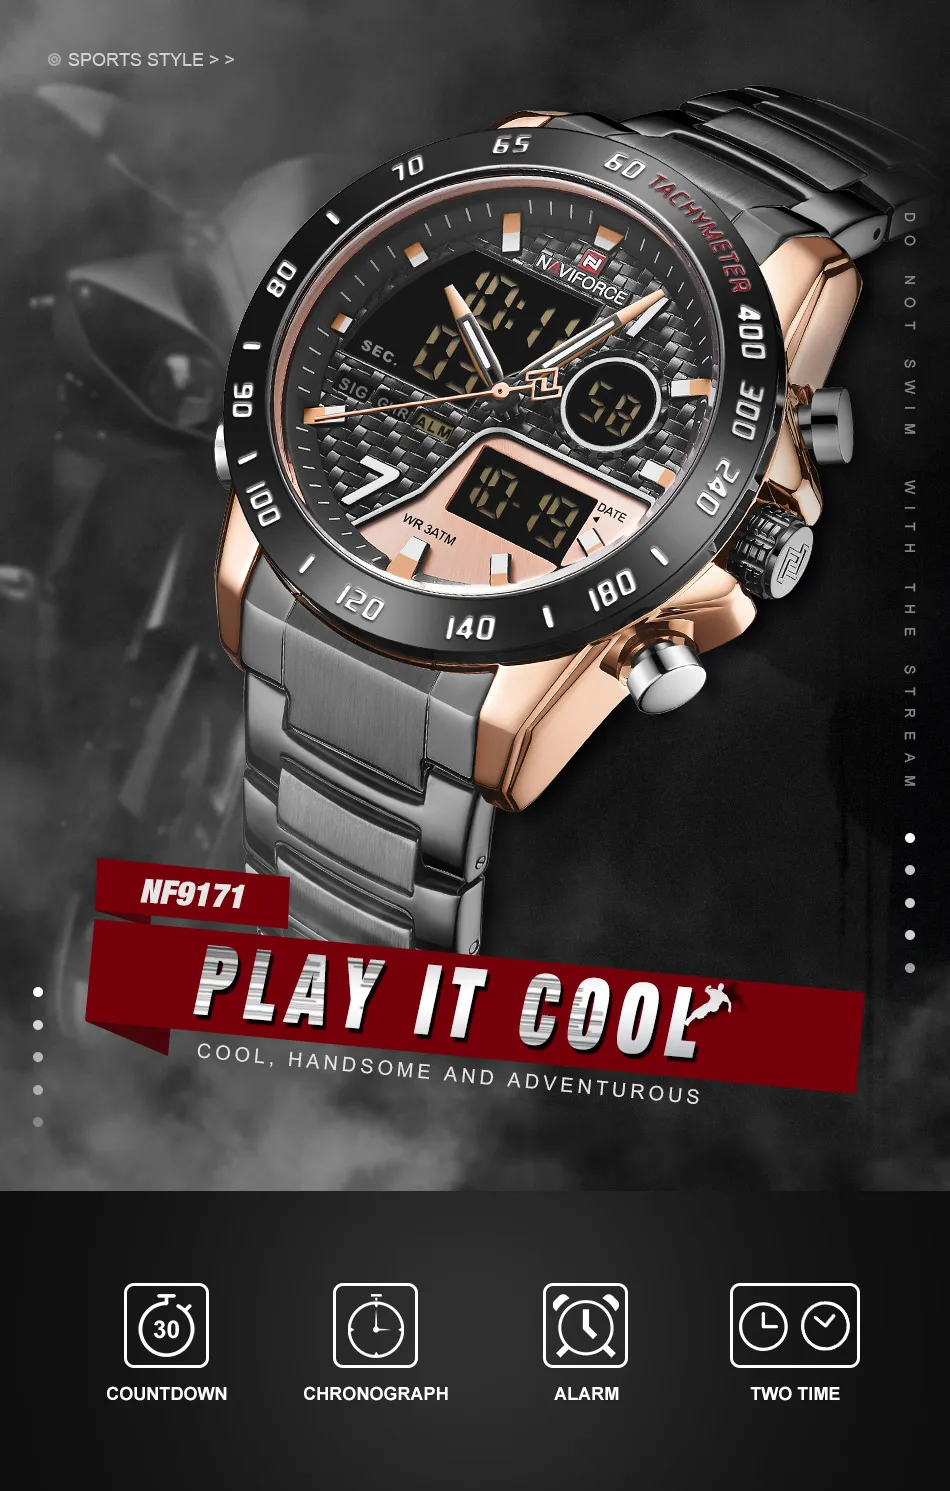 Новые мужские часы Топ люксовый бренд NAVIFORCE армейские спортивные мужские часы из нержавеющей стали водонепроницаемые кварцевые наручные часы Мужские часы